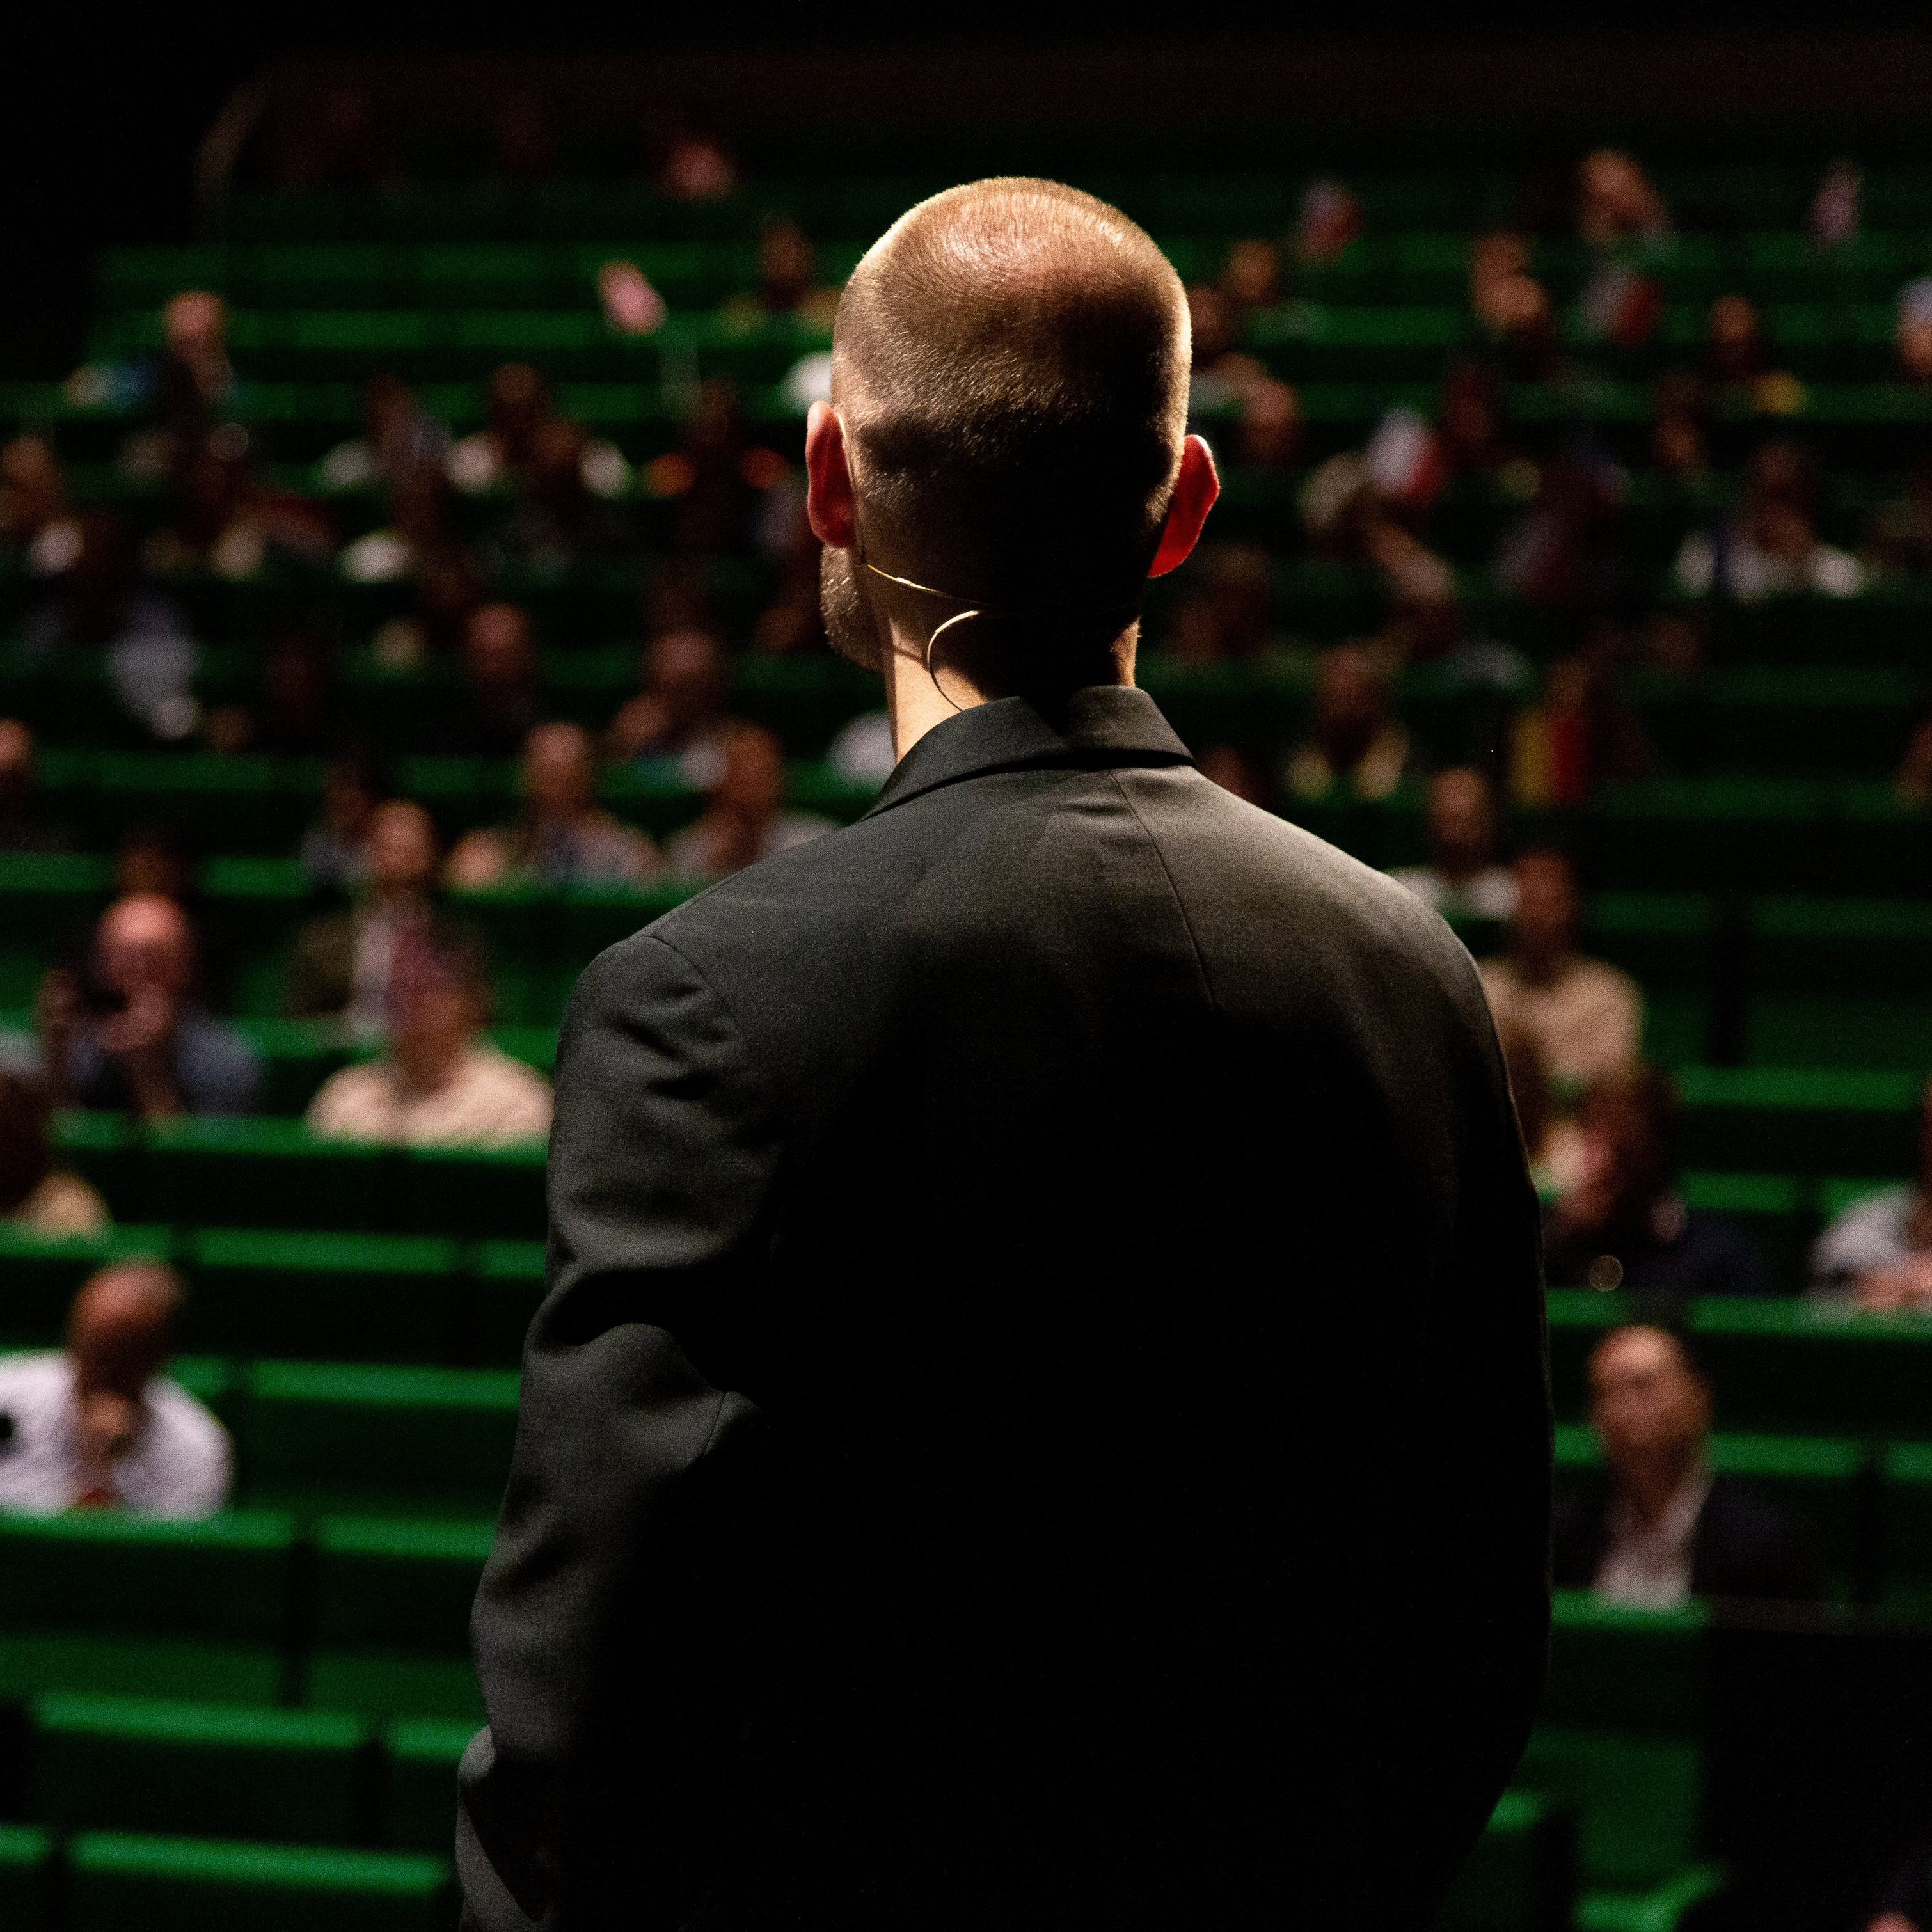 Ένας άνδρας με μαύρη στολή κοιτάζει ένα κοινό σε ένα πράσινο αμφιθέατρο.